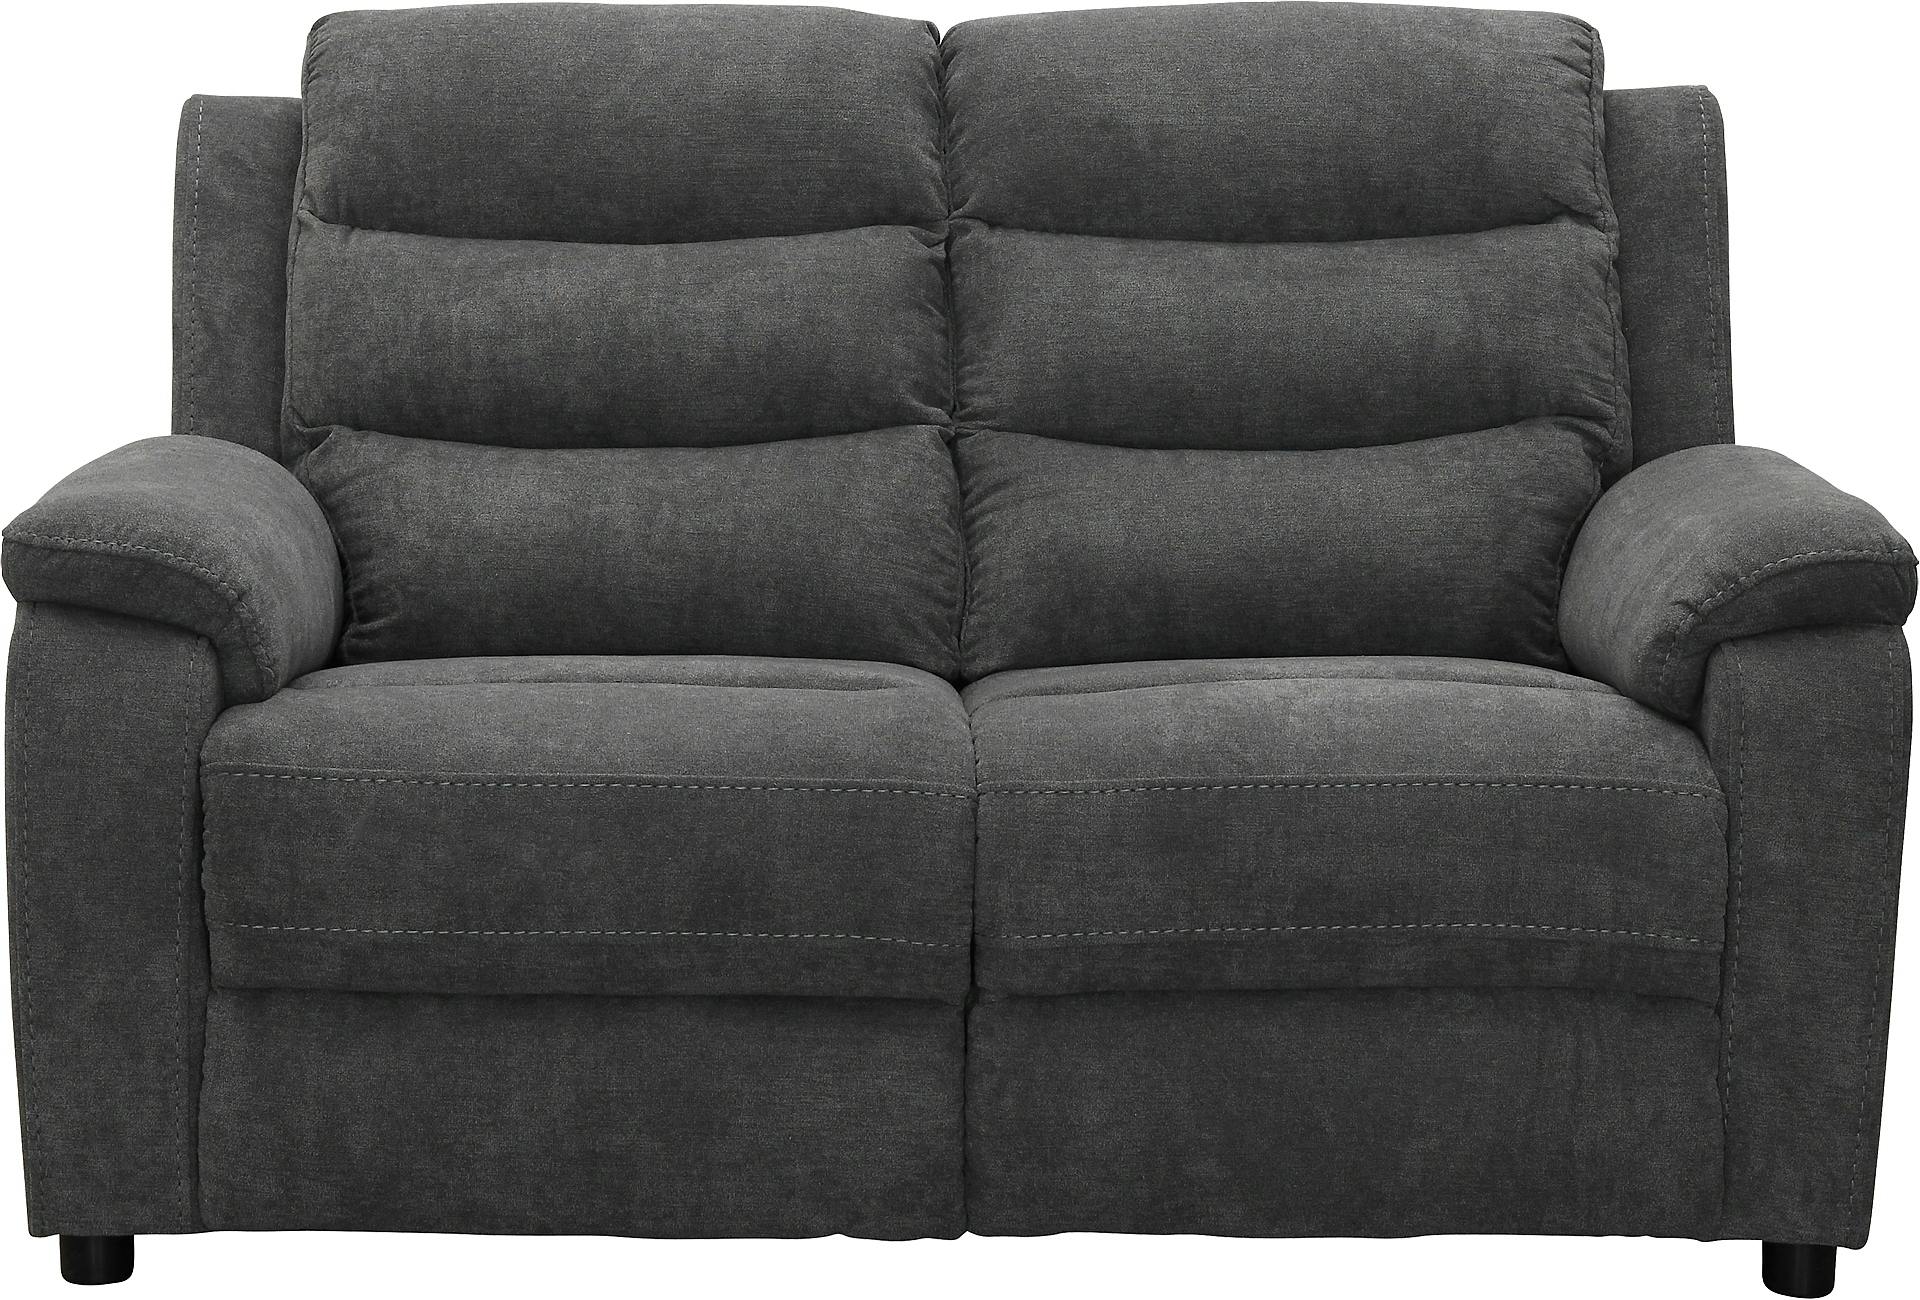 Cozy 2-seter sofa  